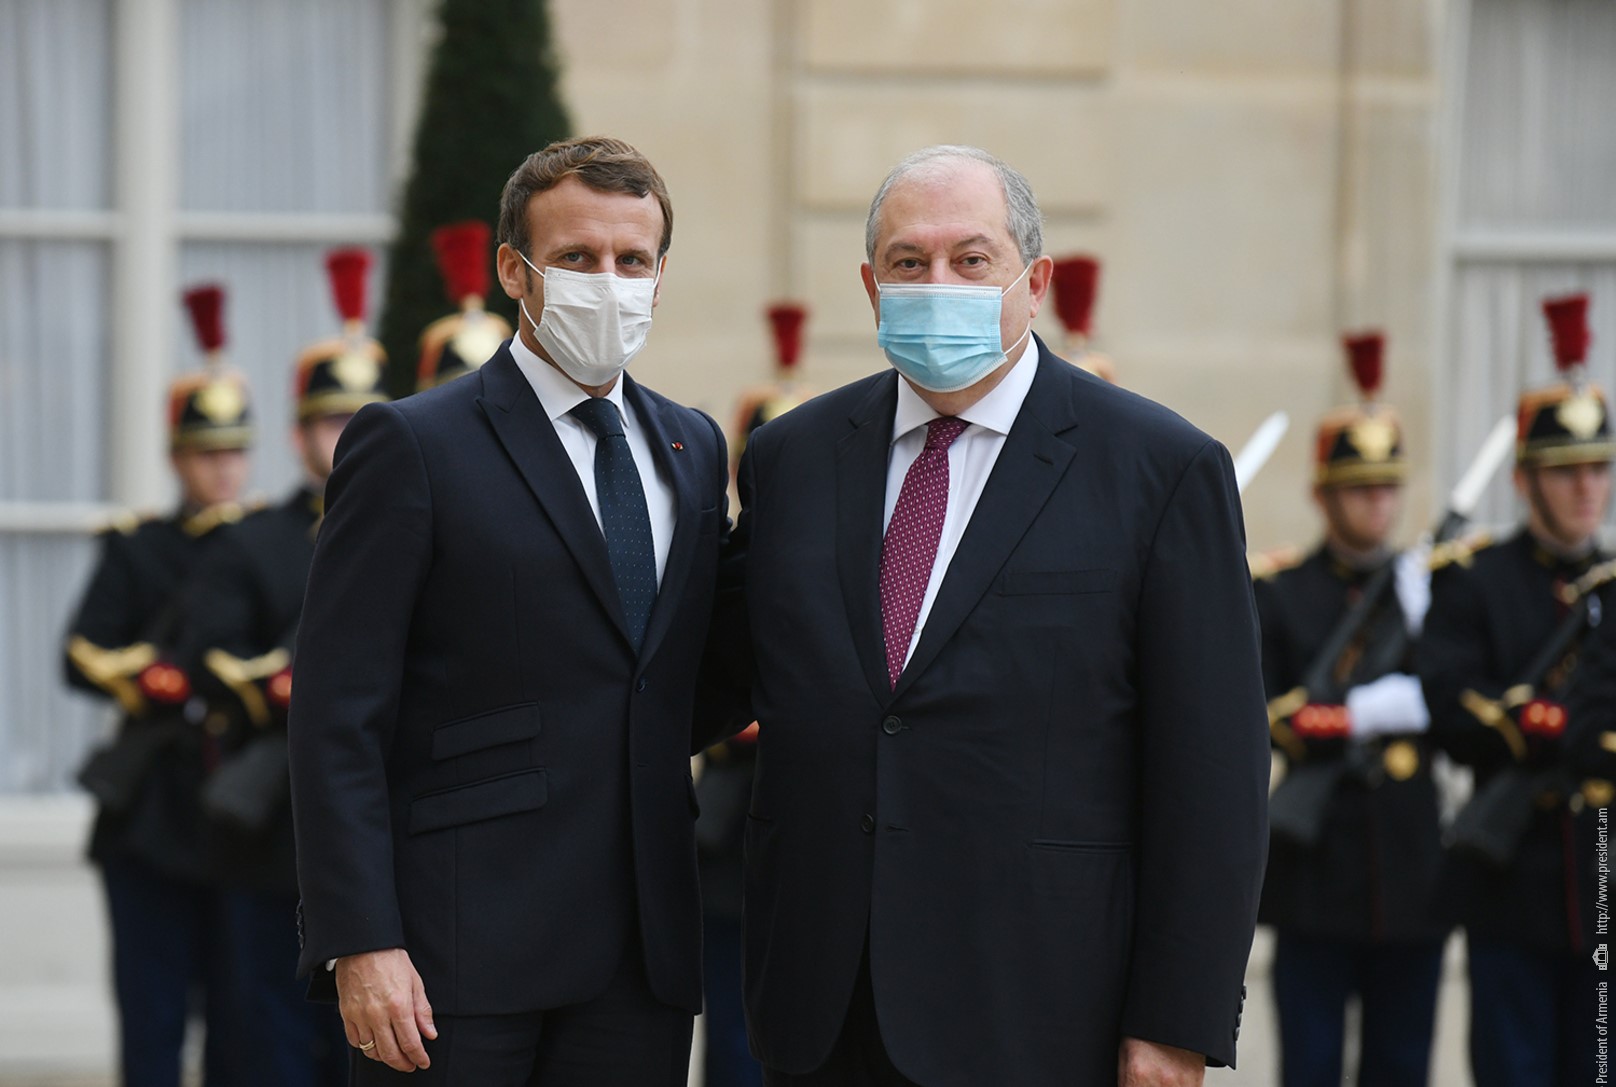 ՀՀ-ն բարձր է գնահատում խաղաղության ամրապնդմանն ուղղված Ֆրանսիայի ջանքերը. նախագահը շնորհավորել է Մակրոնին